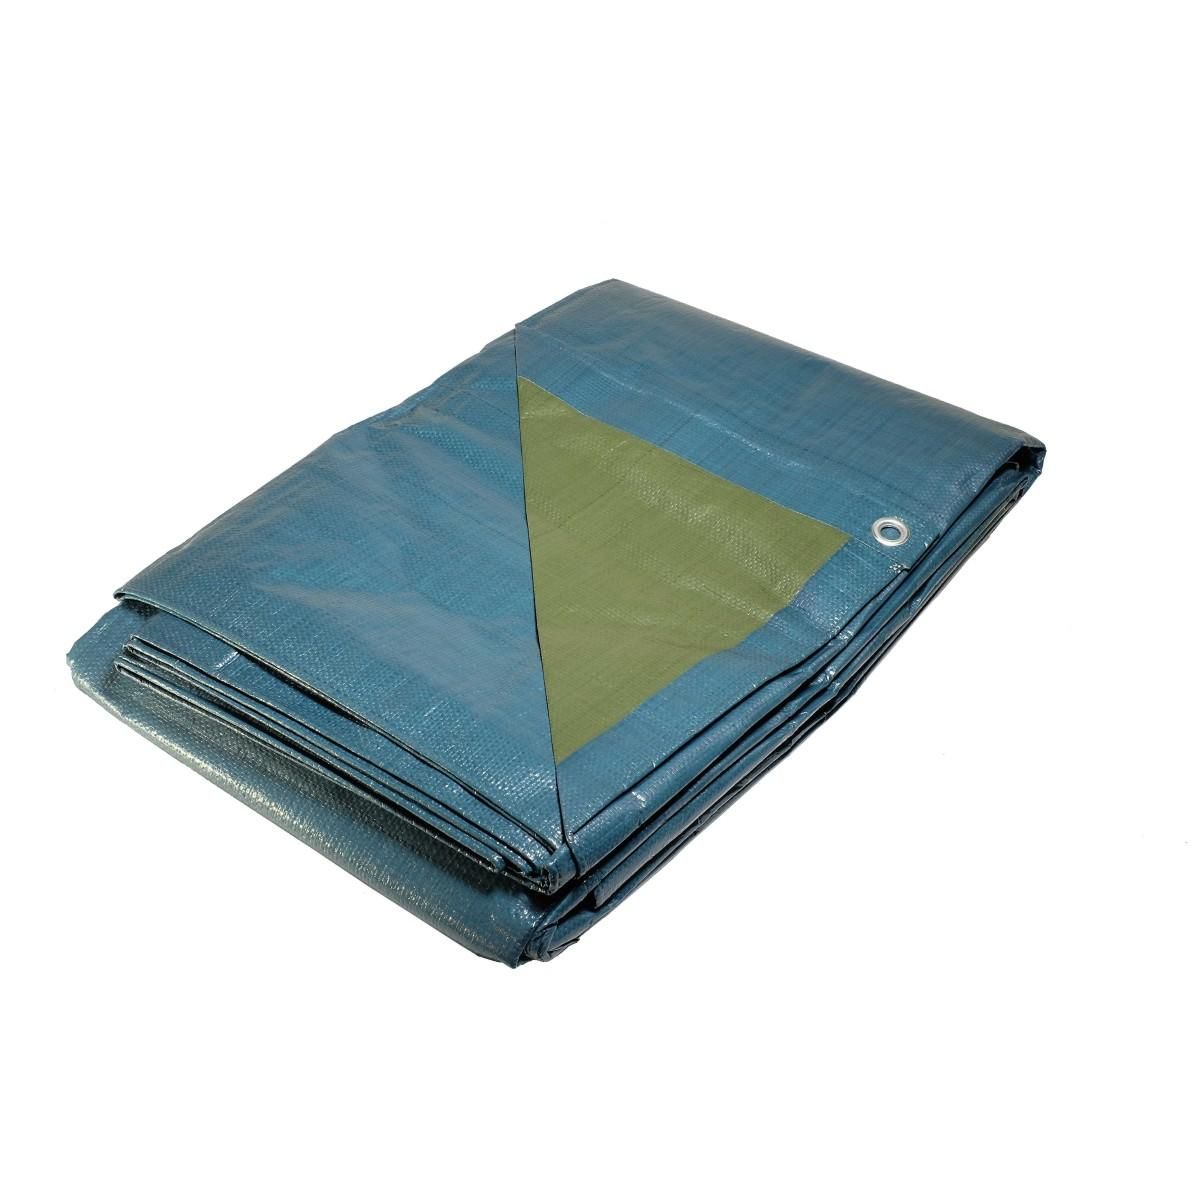 Tecplast Bâche plastique 2x3 m bleue et verte 150g/m2 - bâche de protection polyéthylène